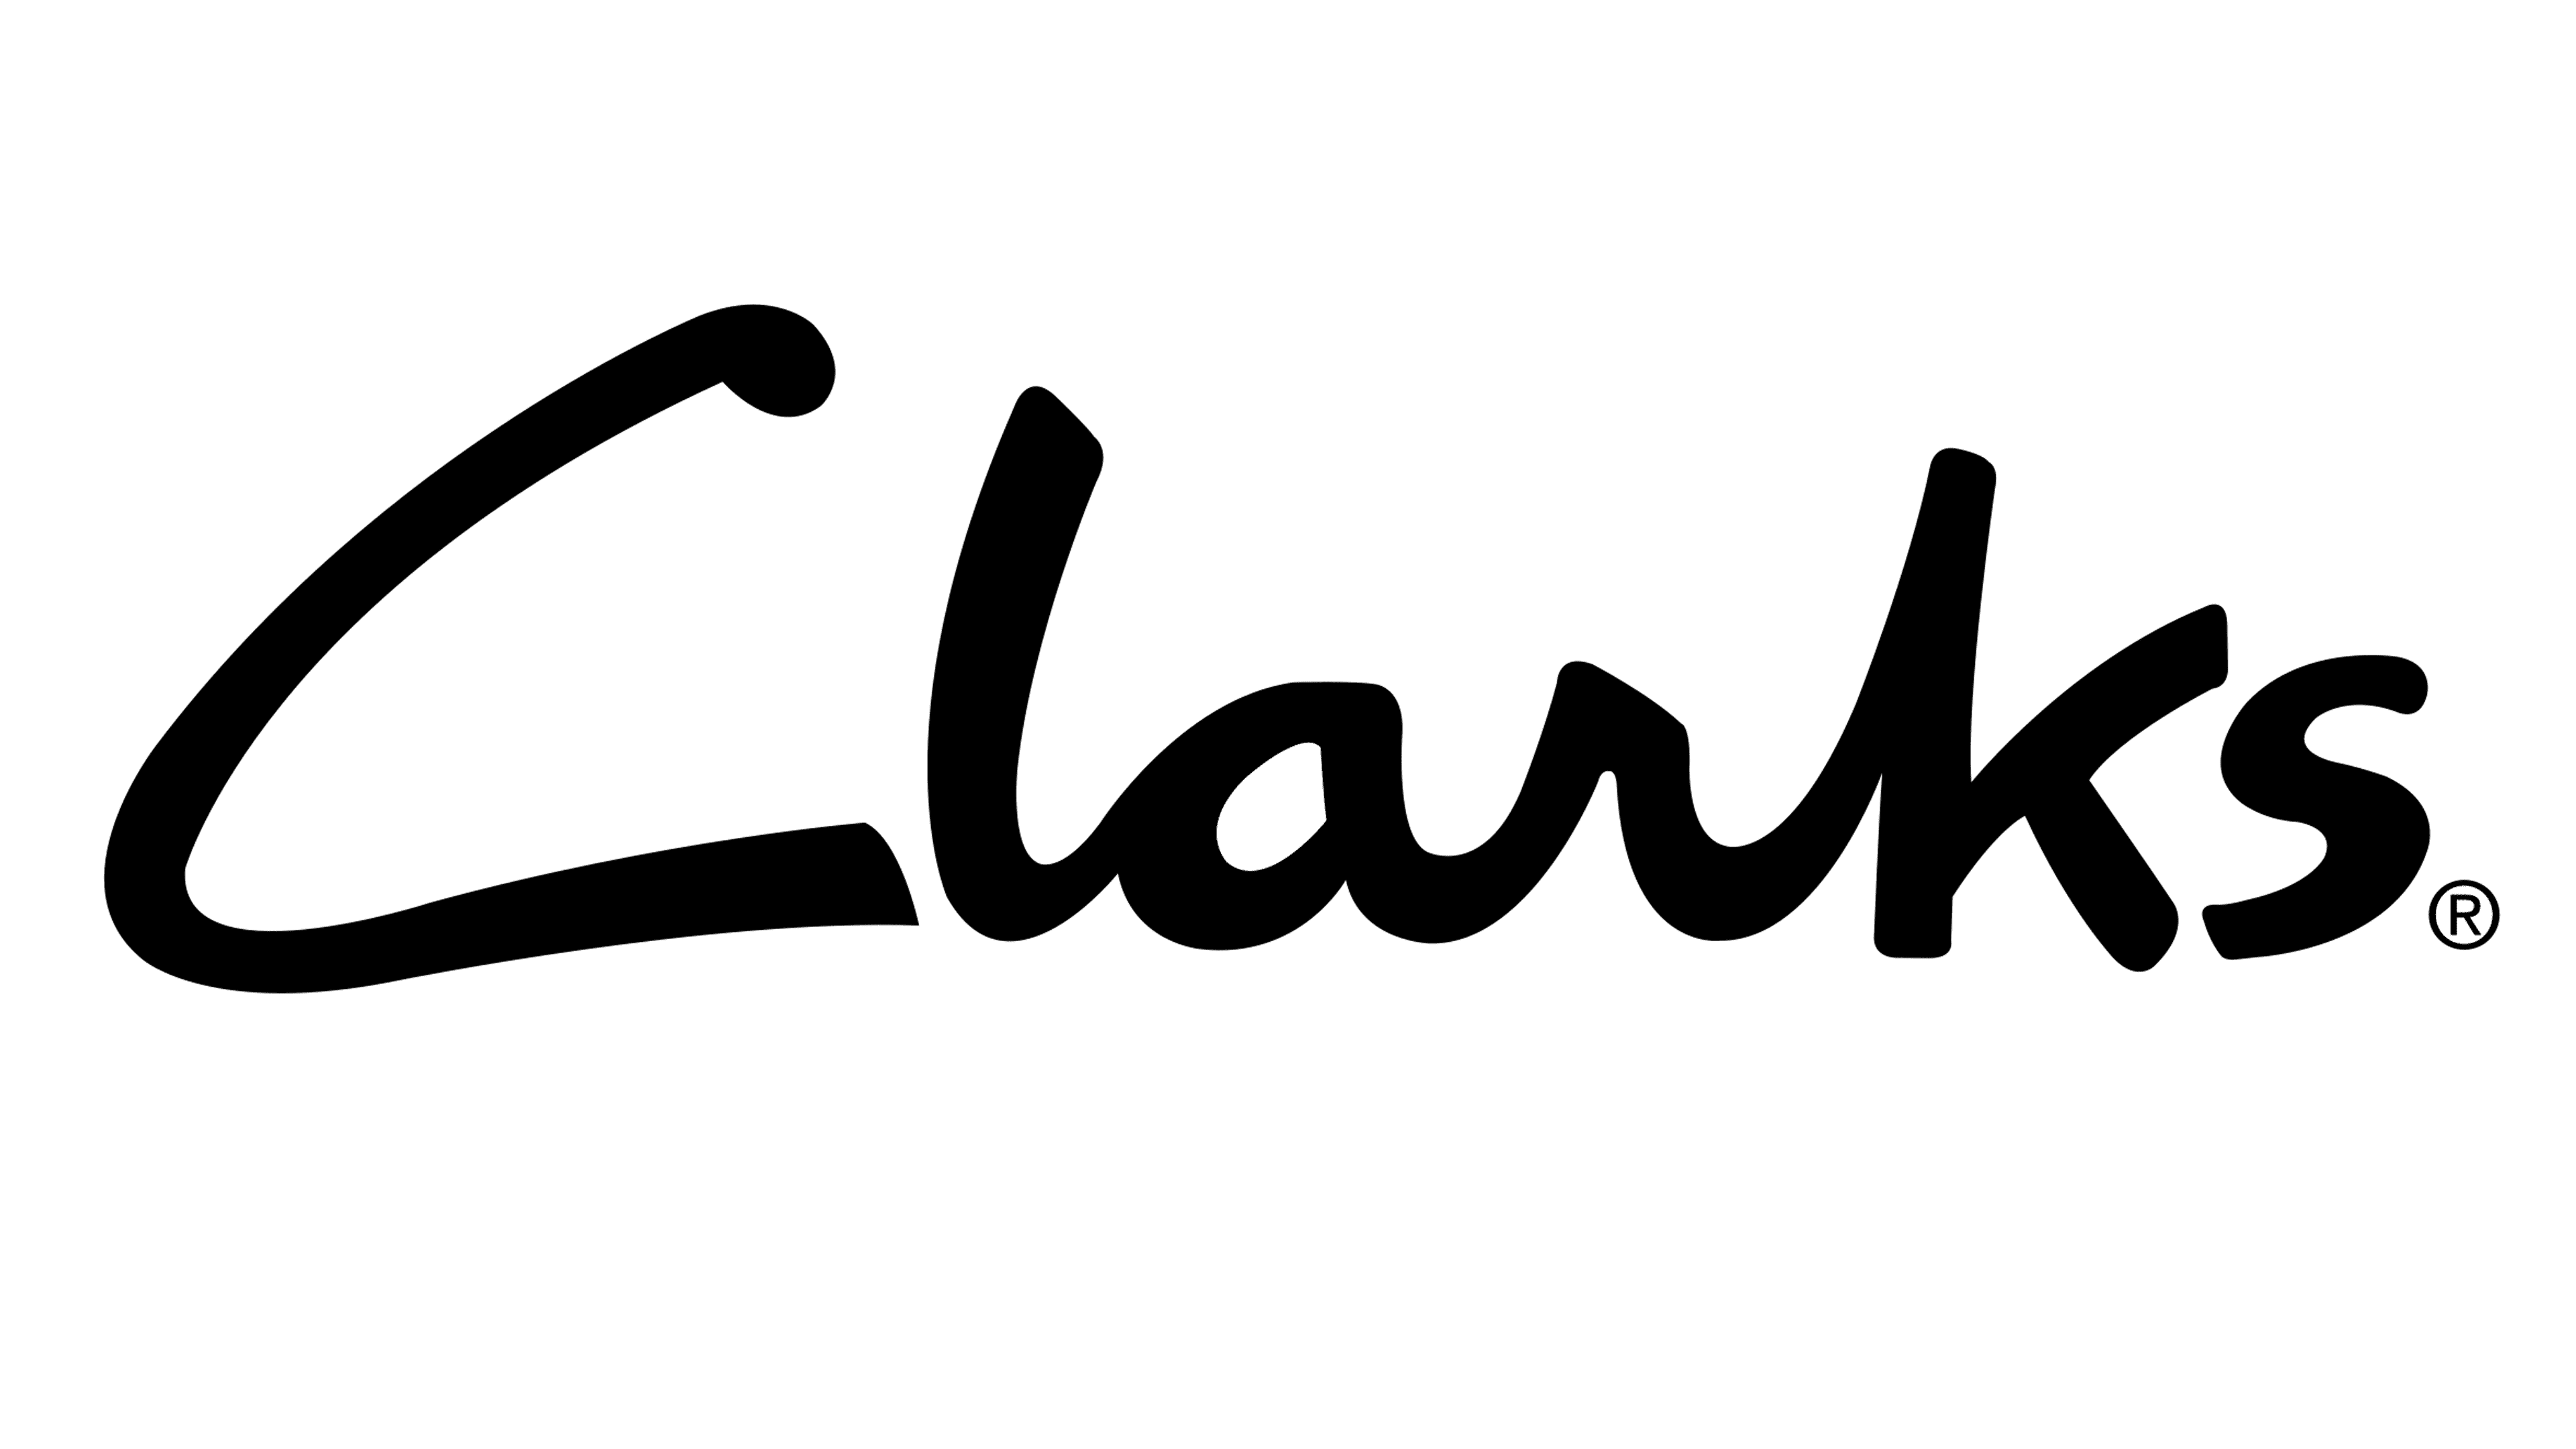 formal shoe brands - Clarks